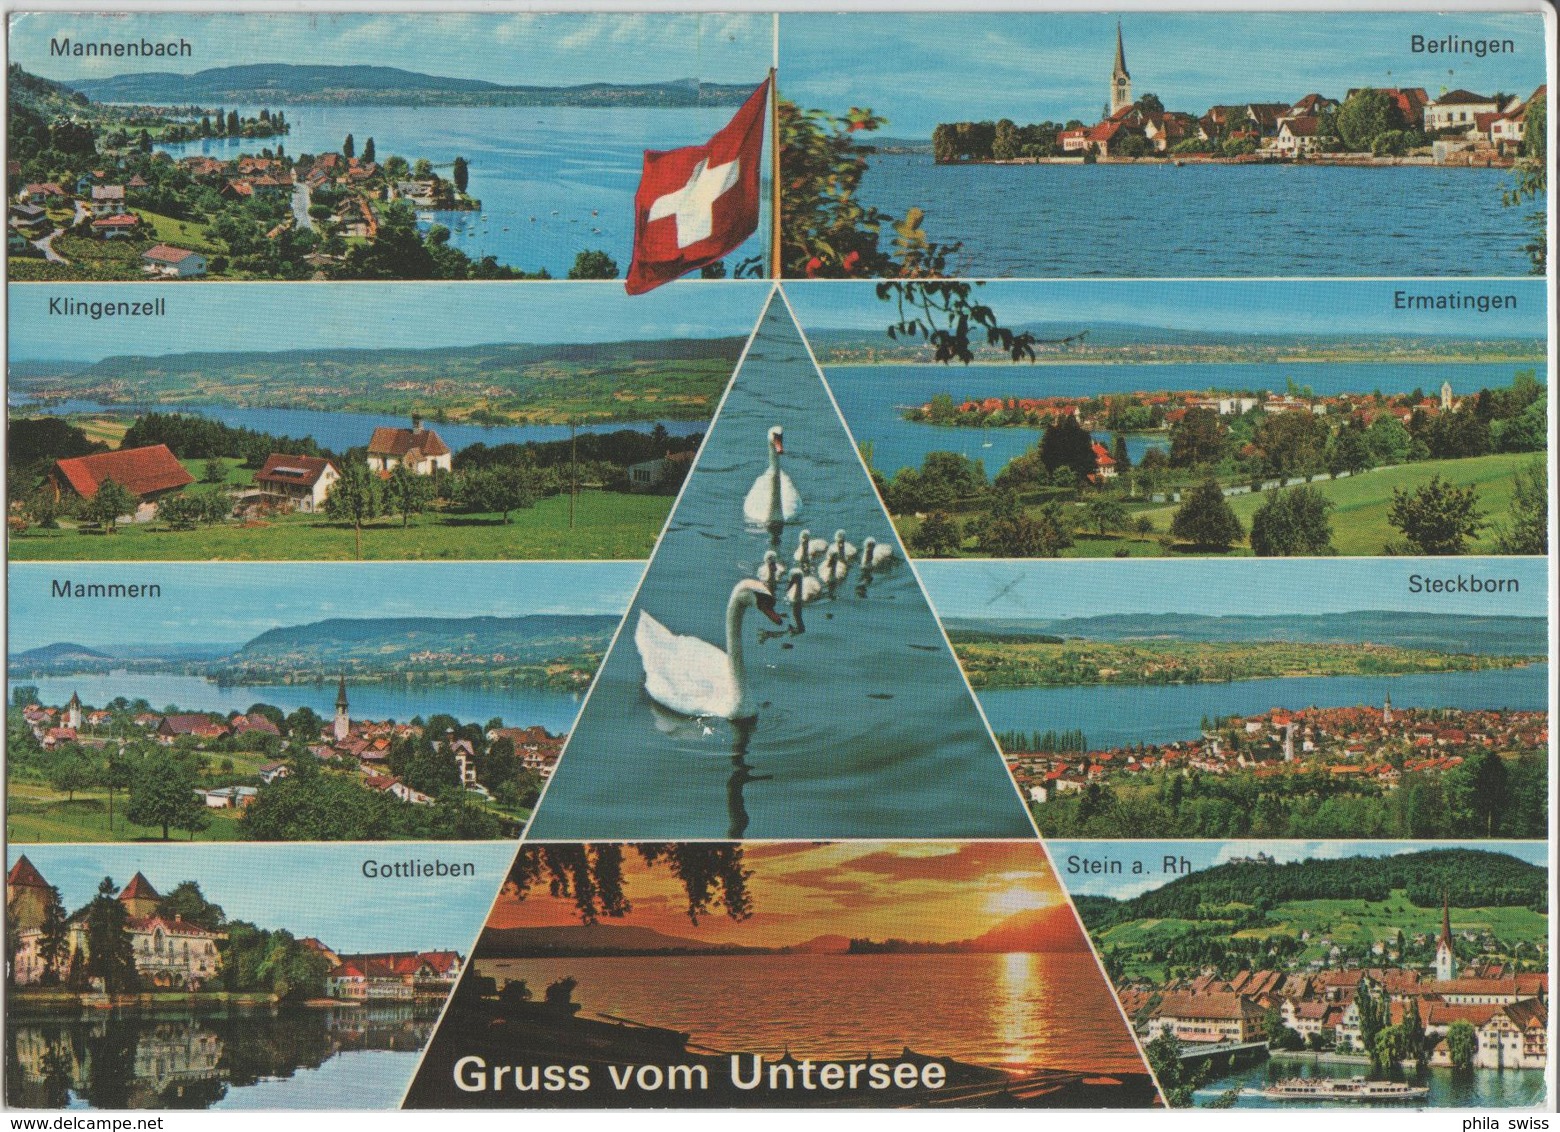 Gruss Vom Untersee - Mannebach, Berlingen, Klingenzell, Ermatingen, Mammern, Steckborn - Photo: Gross - Berlingen